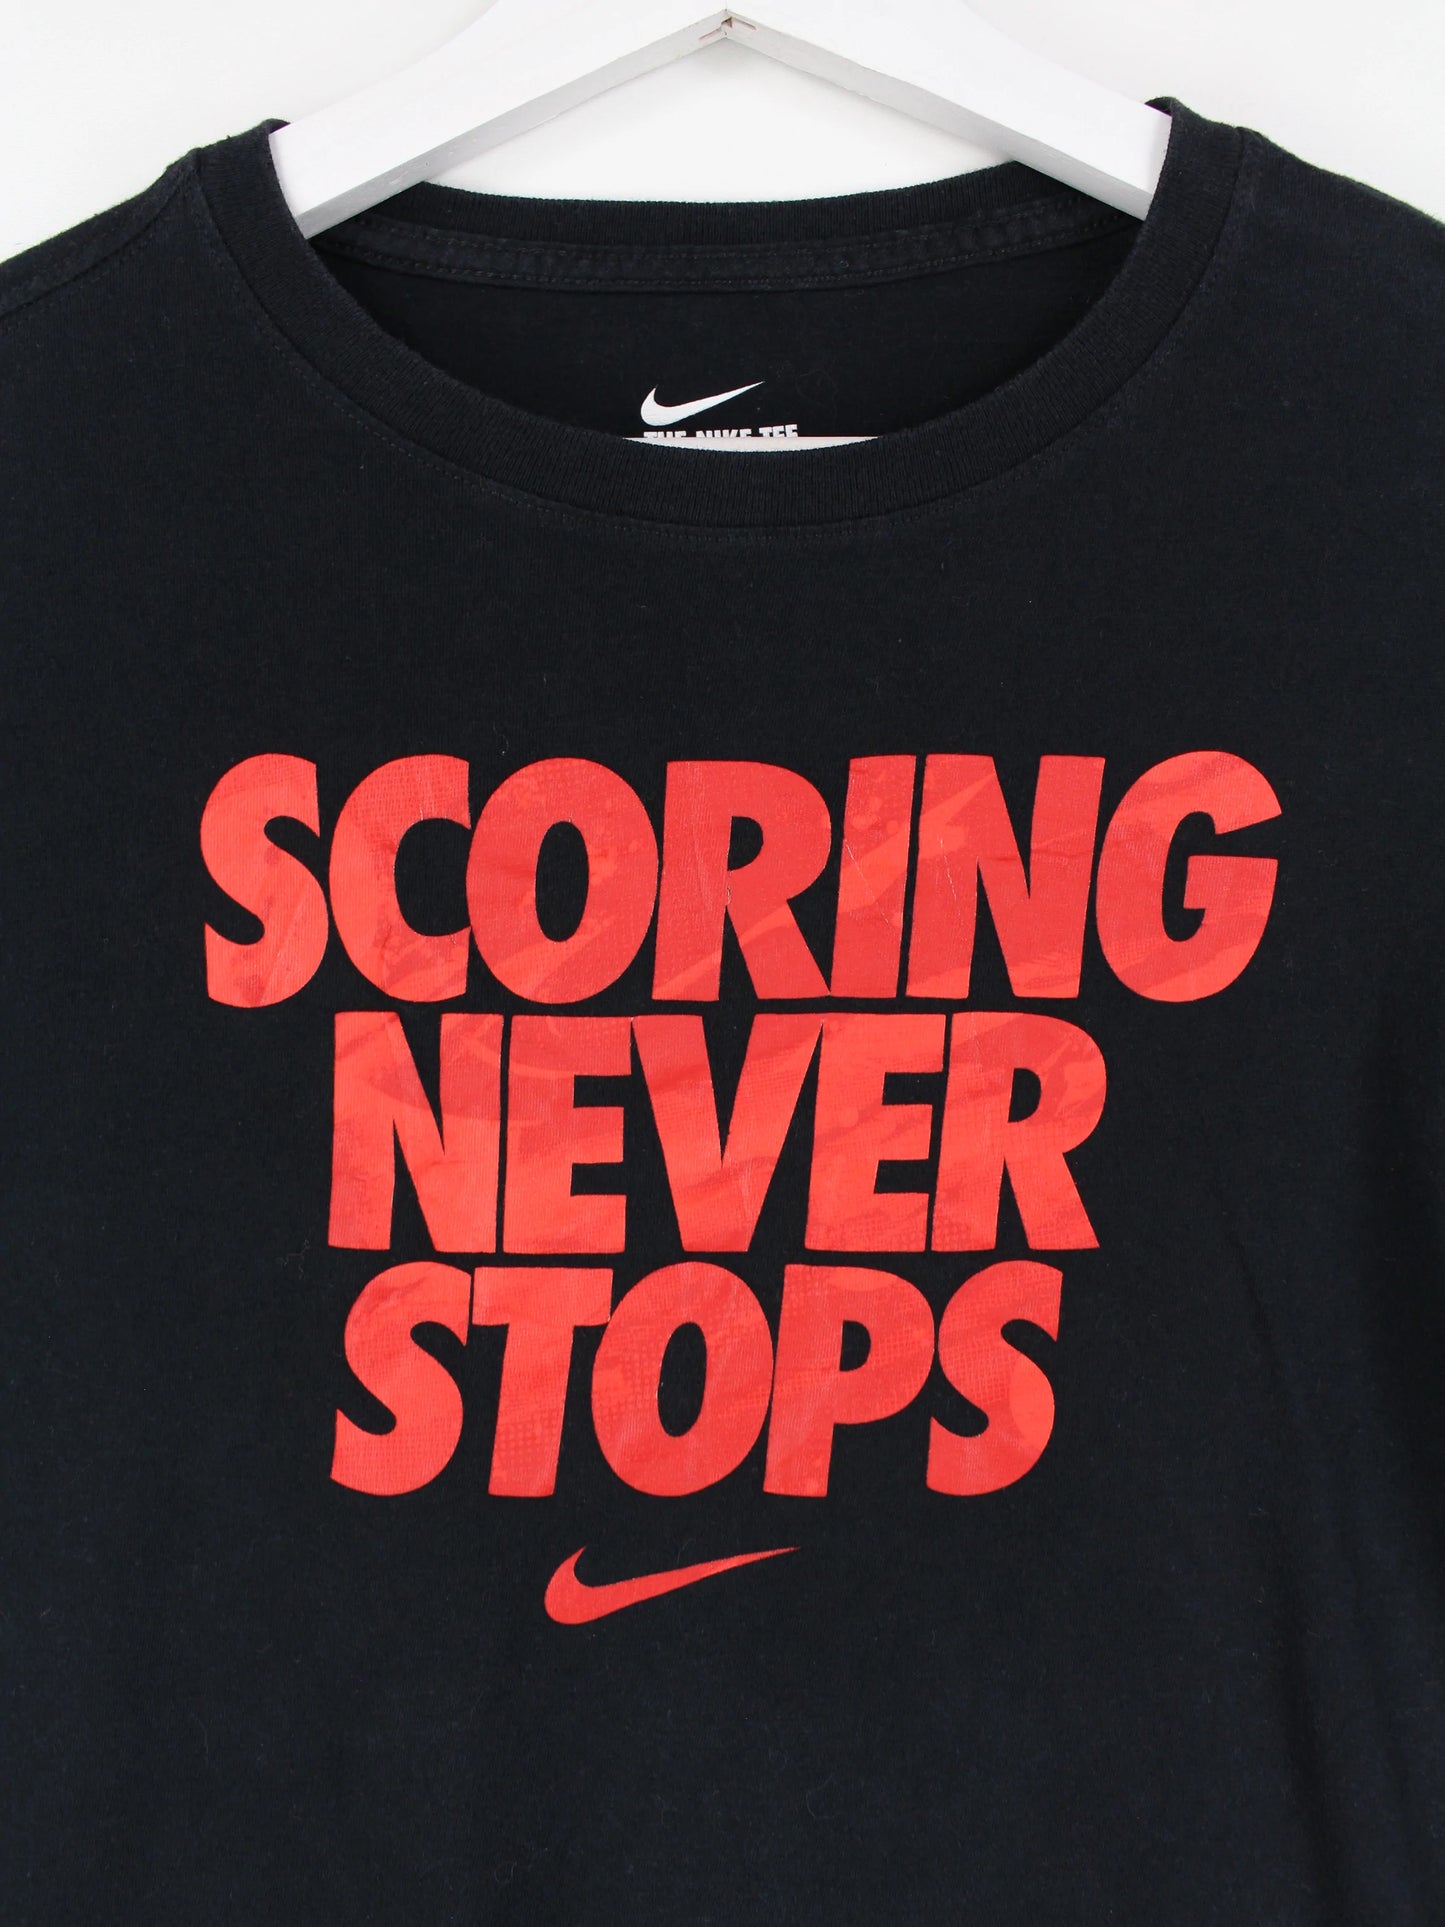 Nike Damen Print T-Shirt Schwarz L